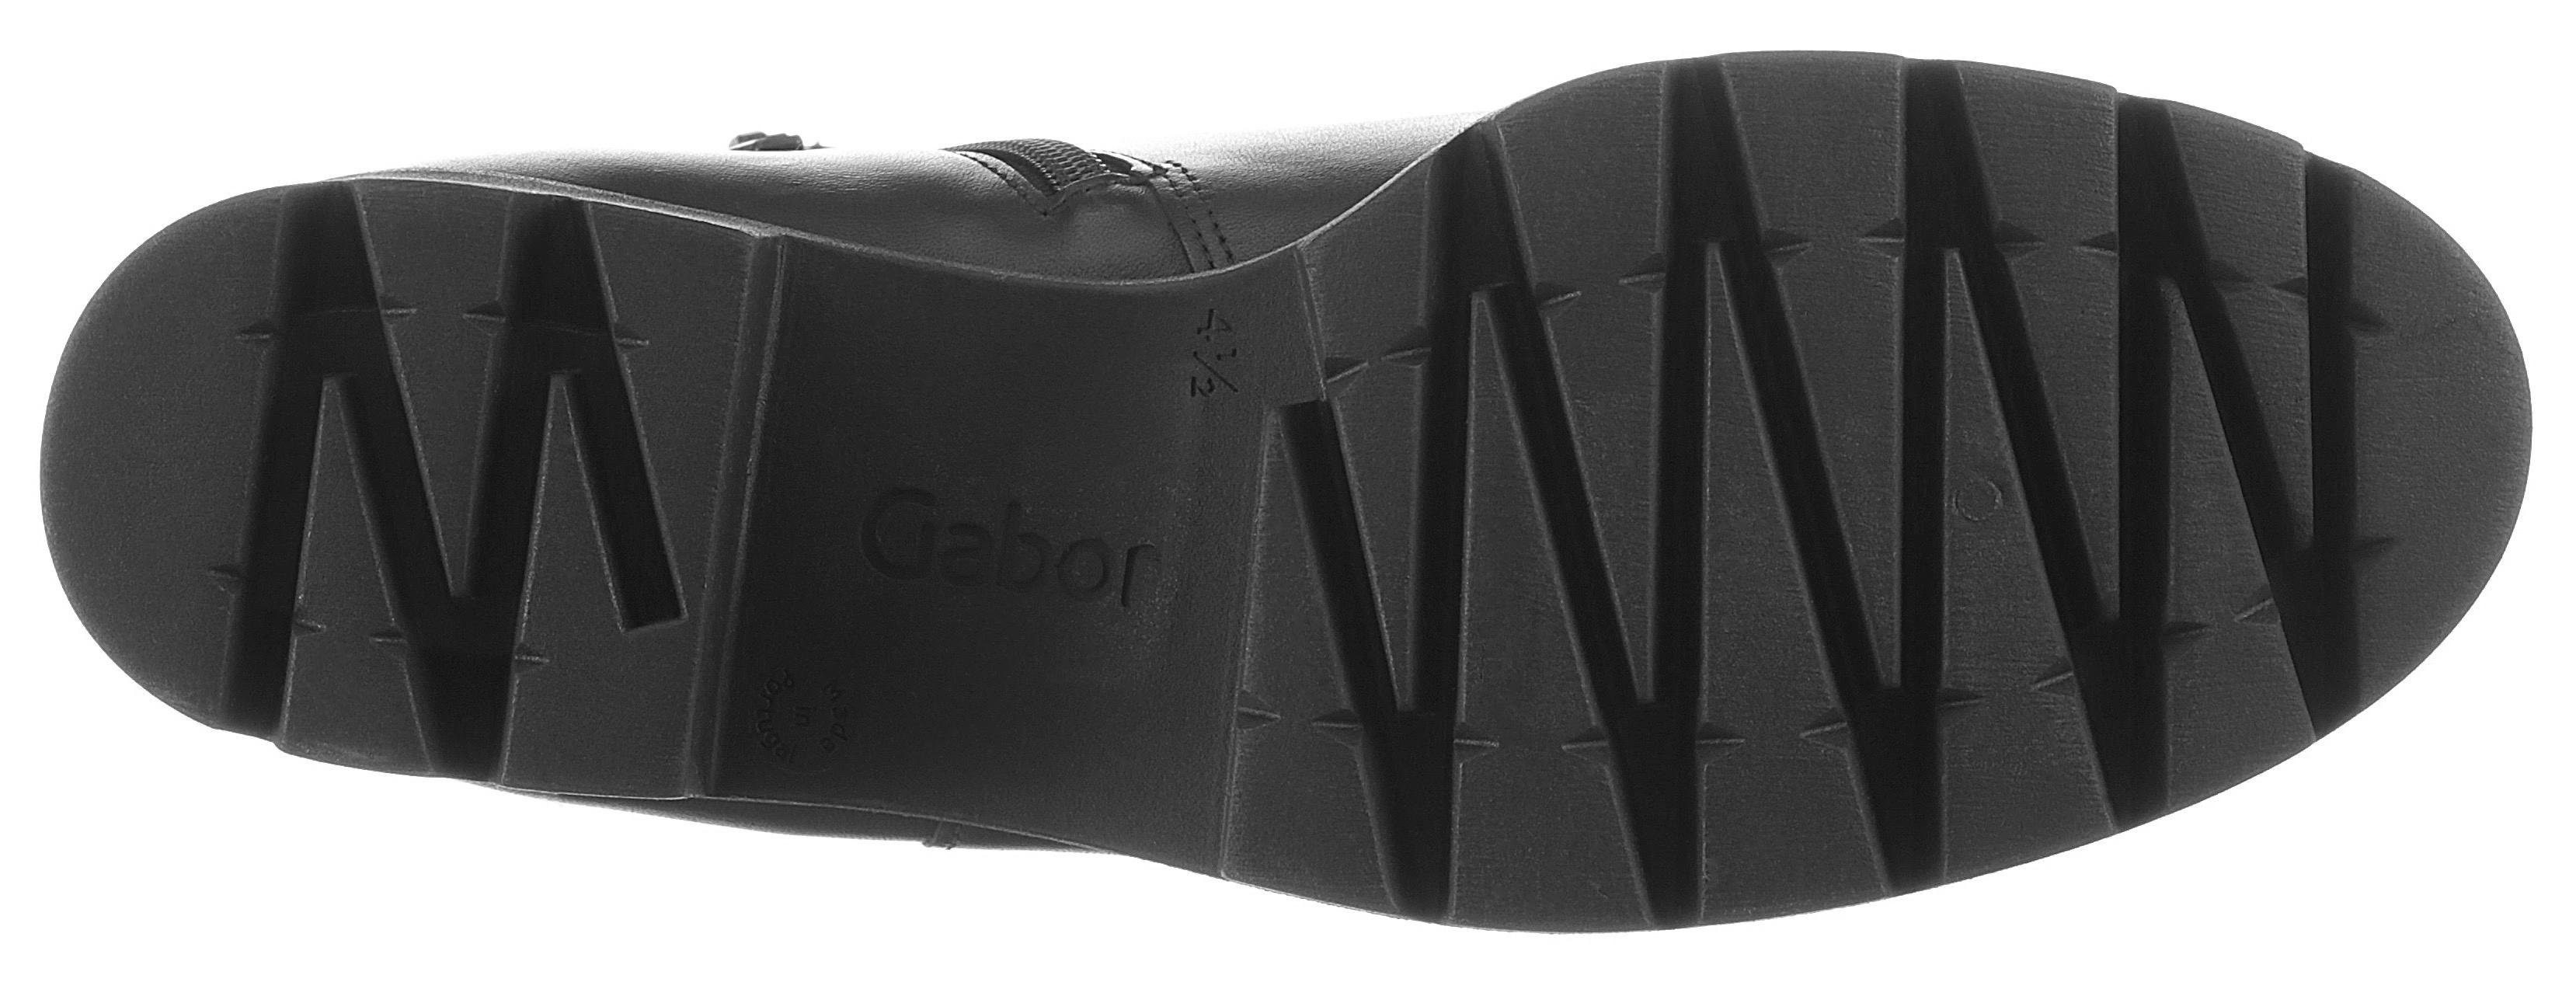 Gabor Chelseaboots mit angesagter schwarz Profilsohle